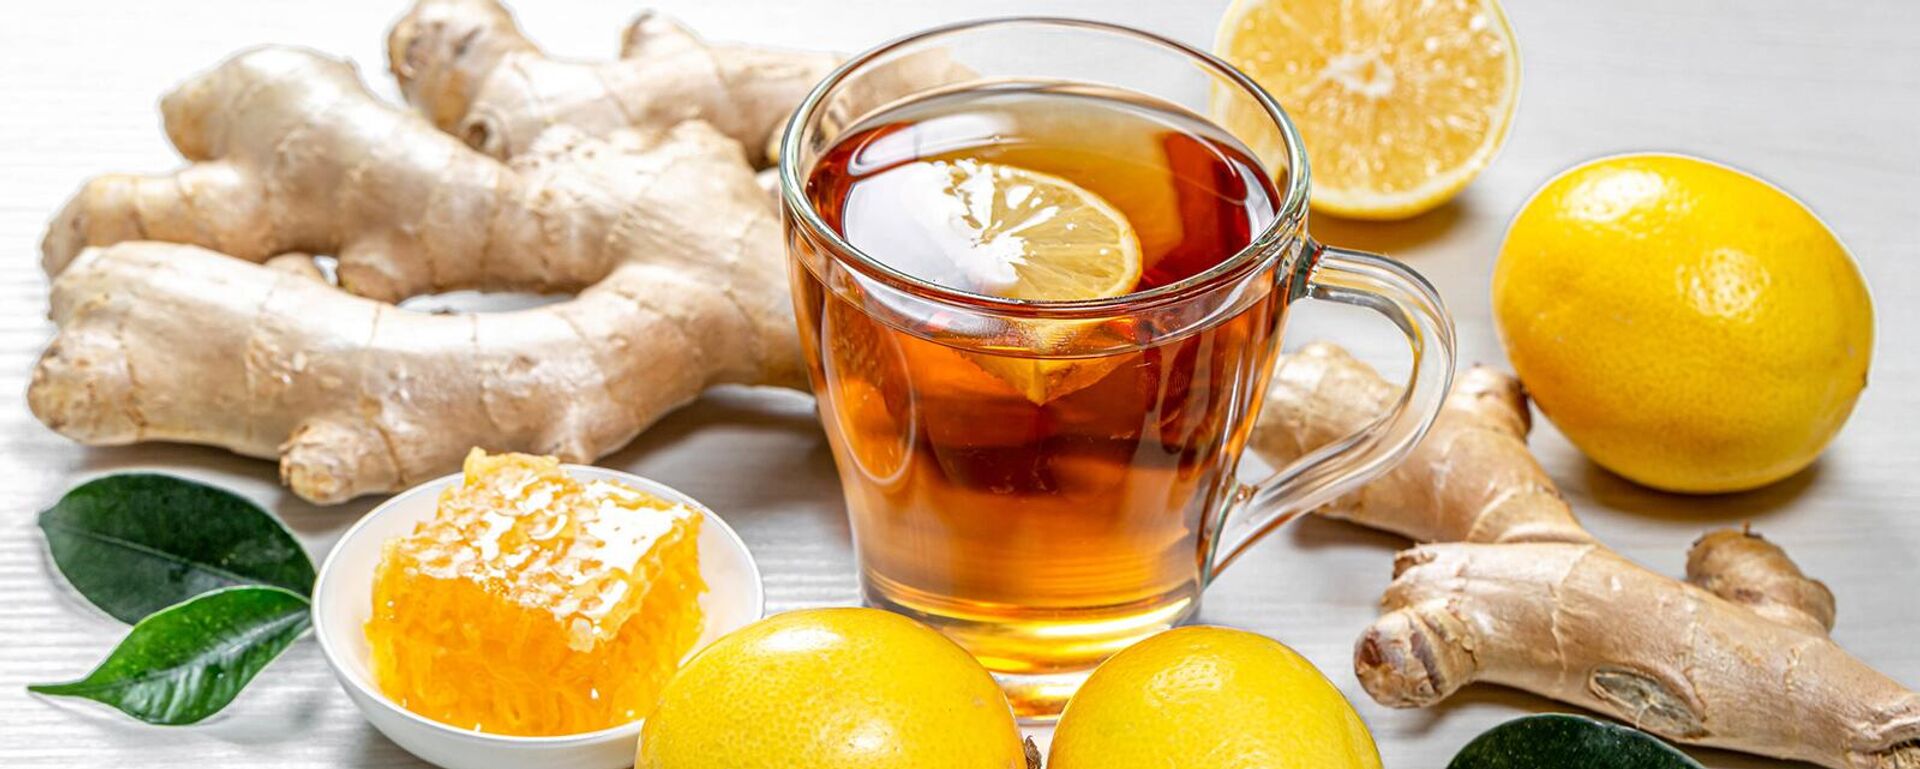 Чай с лимоном - Sputnik Армения, 1920, 09.02.2021